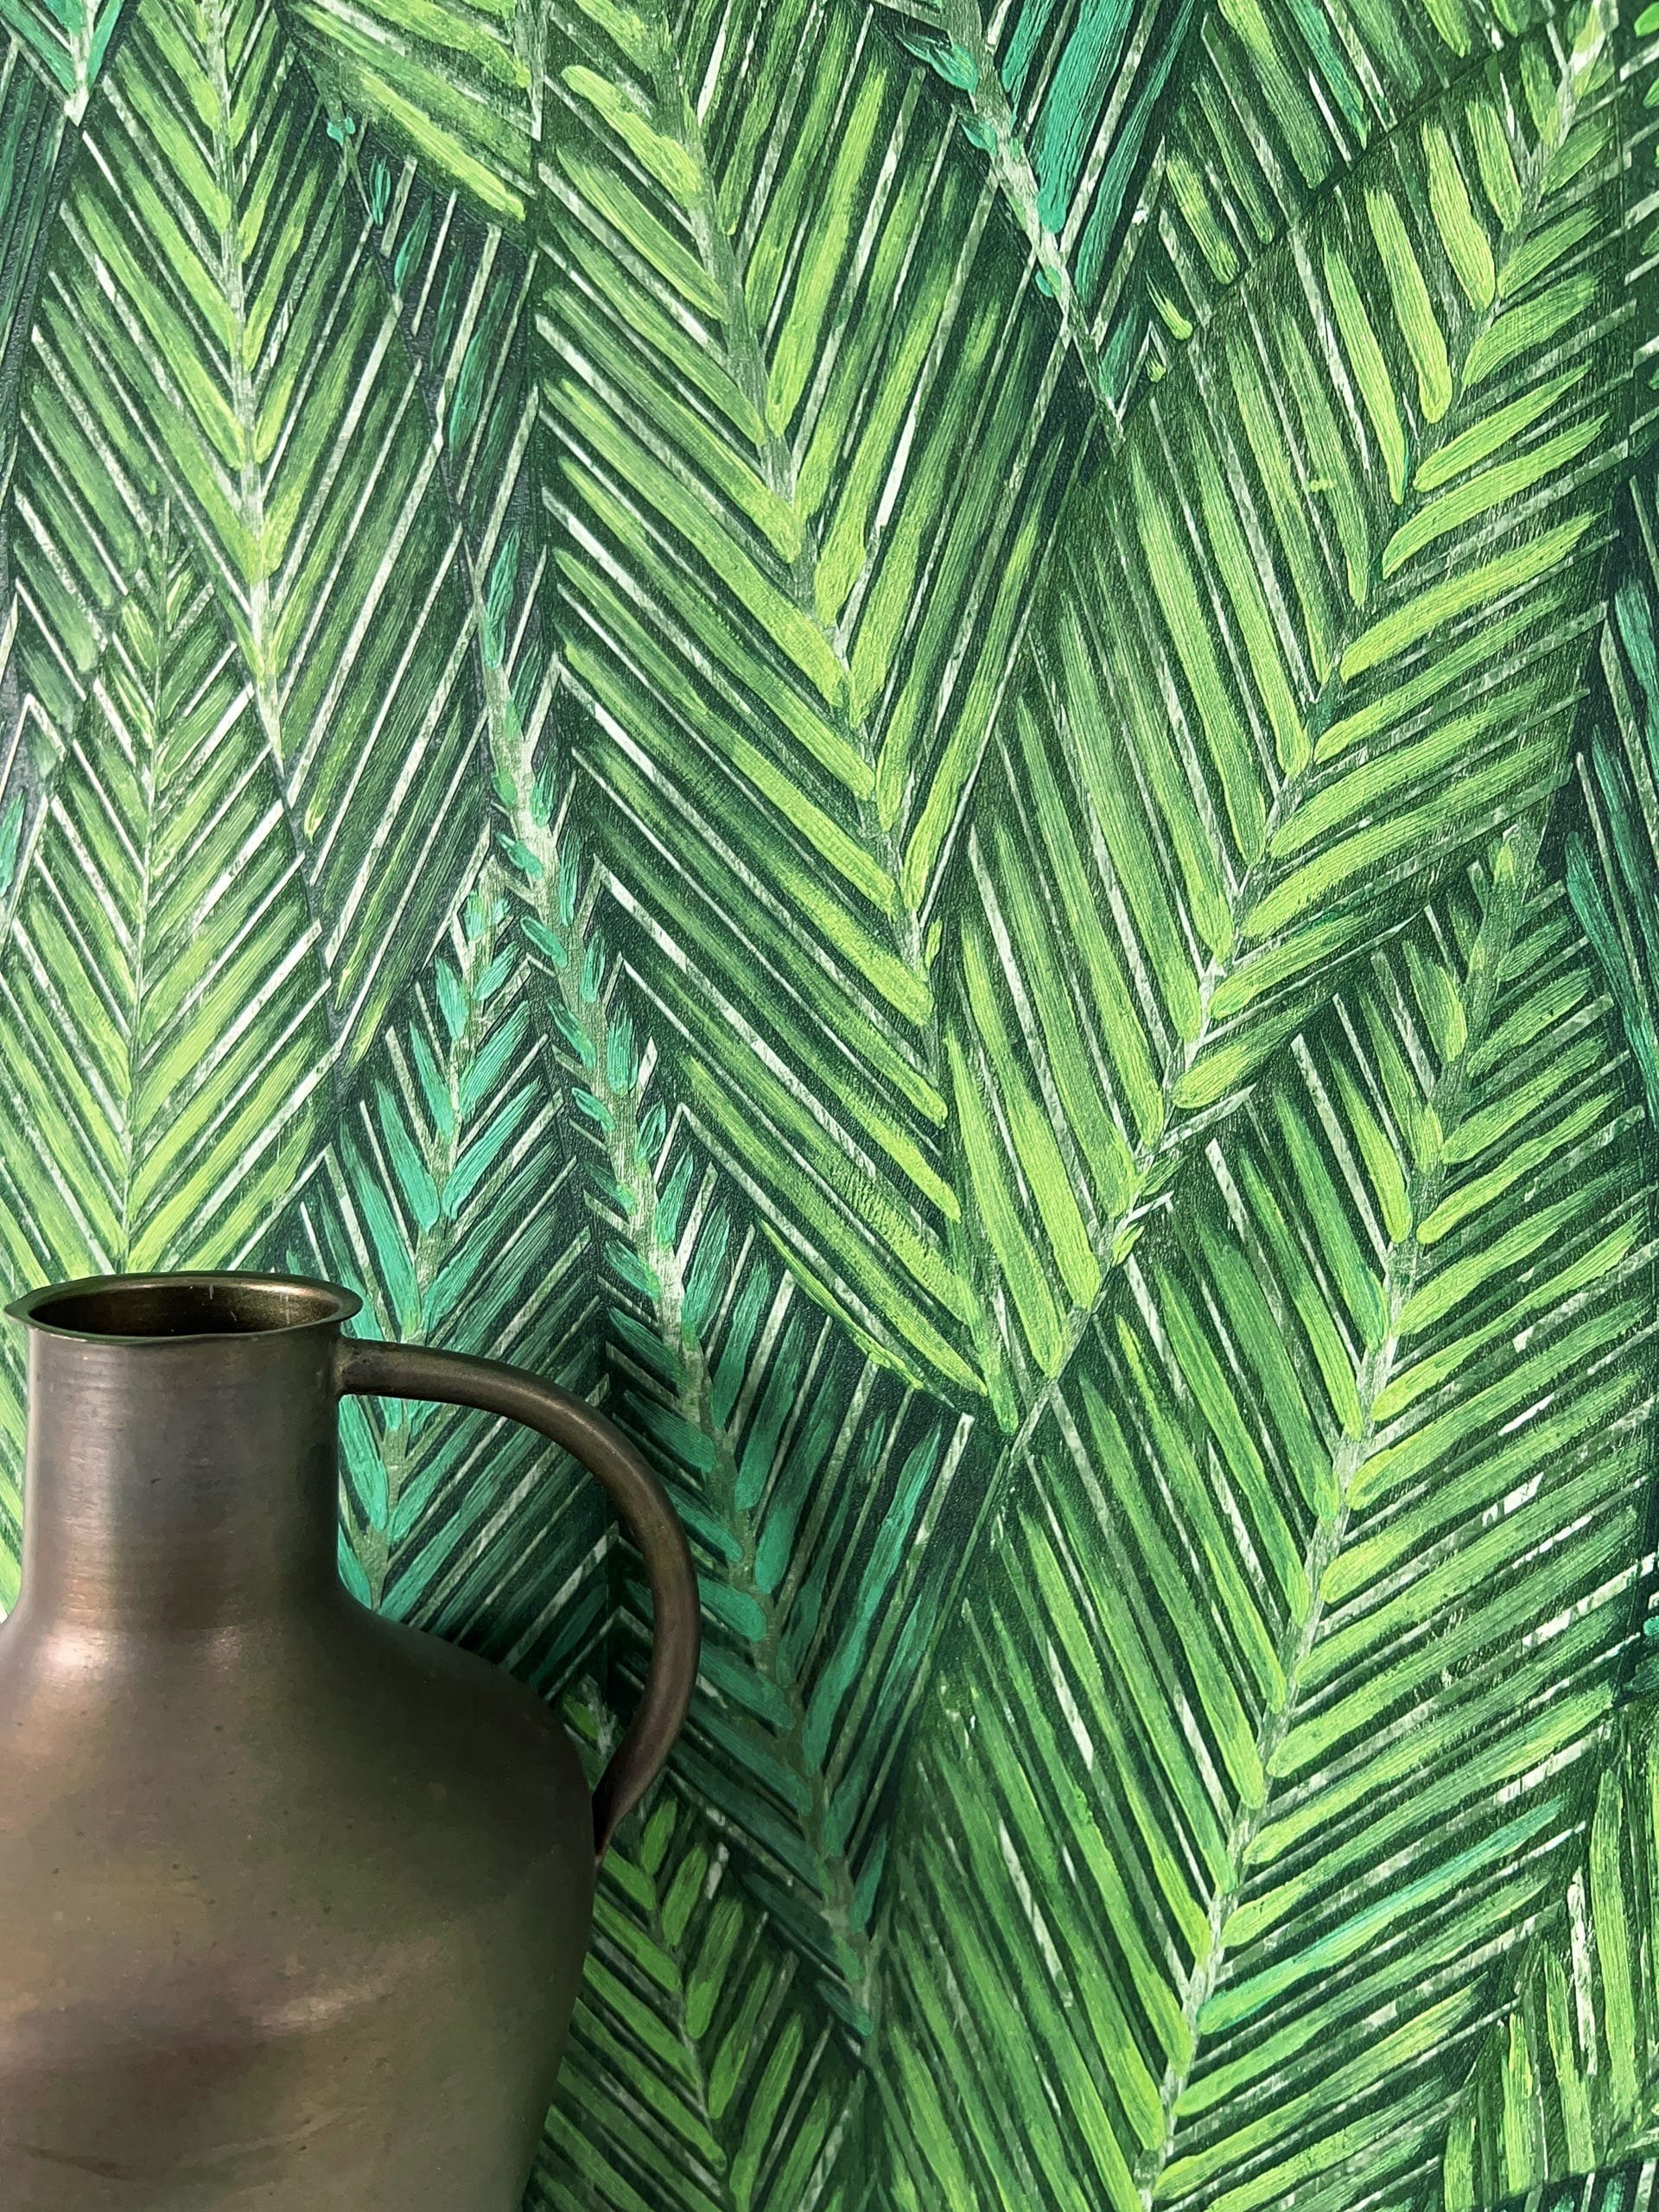 Newroom Vliestapete, Grün Tapete Modern Dschungel - Mustertapete Dschungeltapete Grau Creme Tropisch Floral Blätter Bananenblätter für Wohnzimmer Schlafzimmer Küche